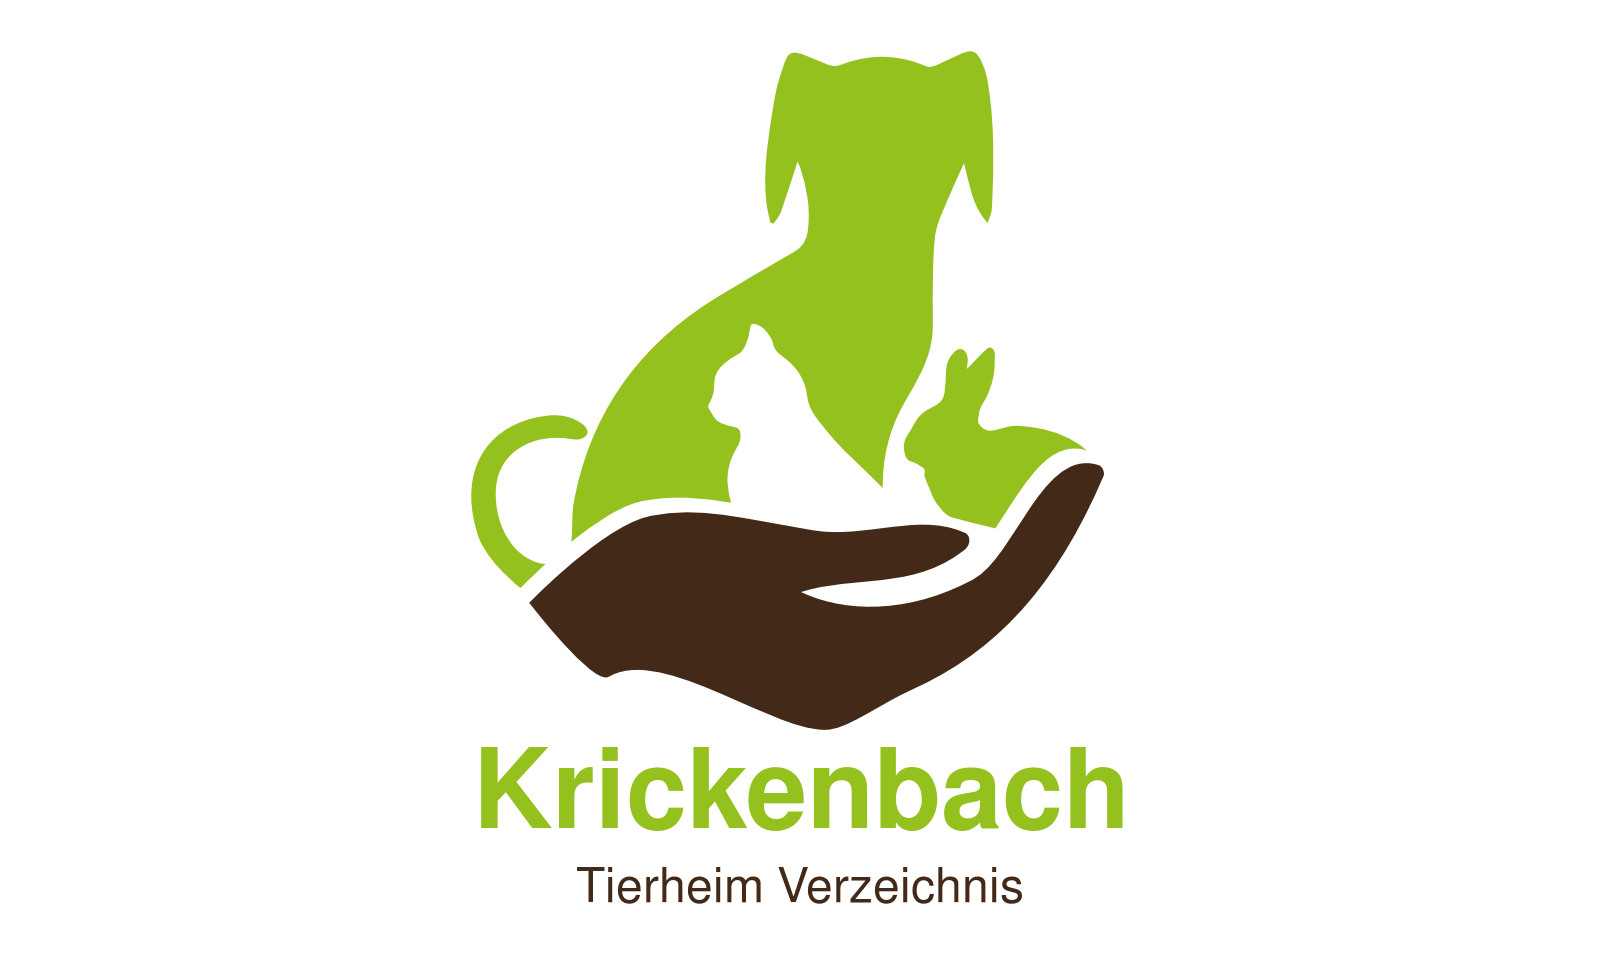 Tierheim Krickenbach